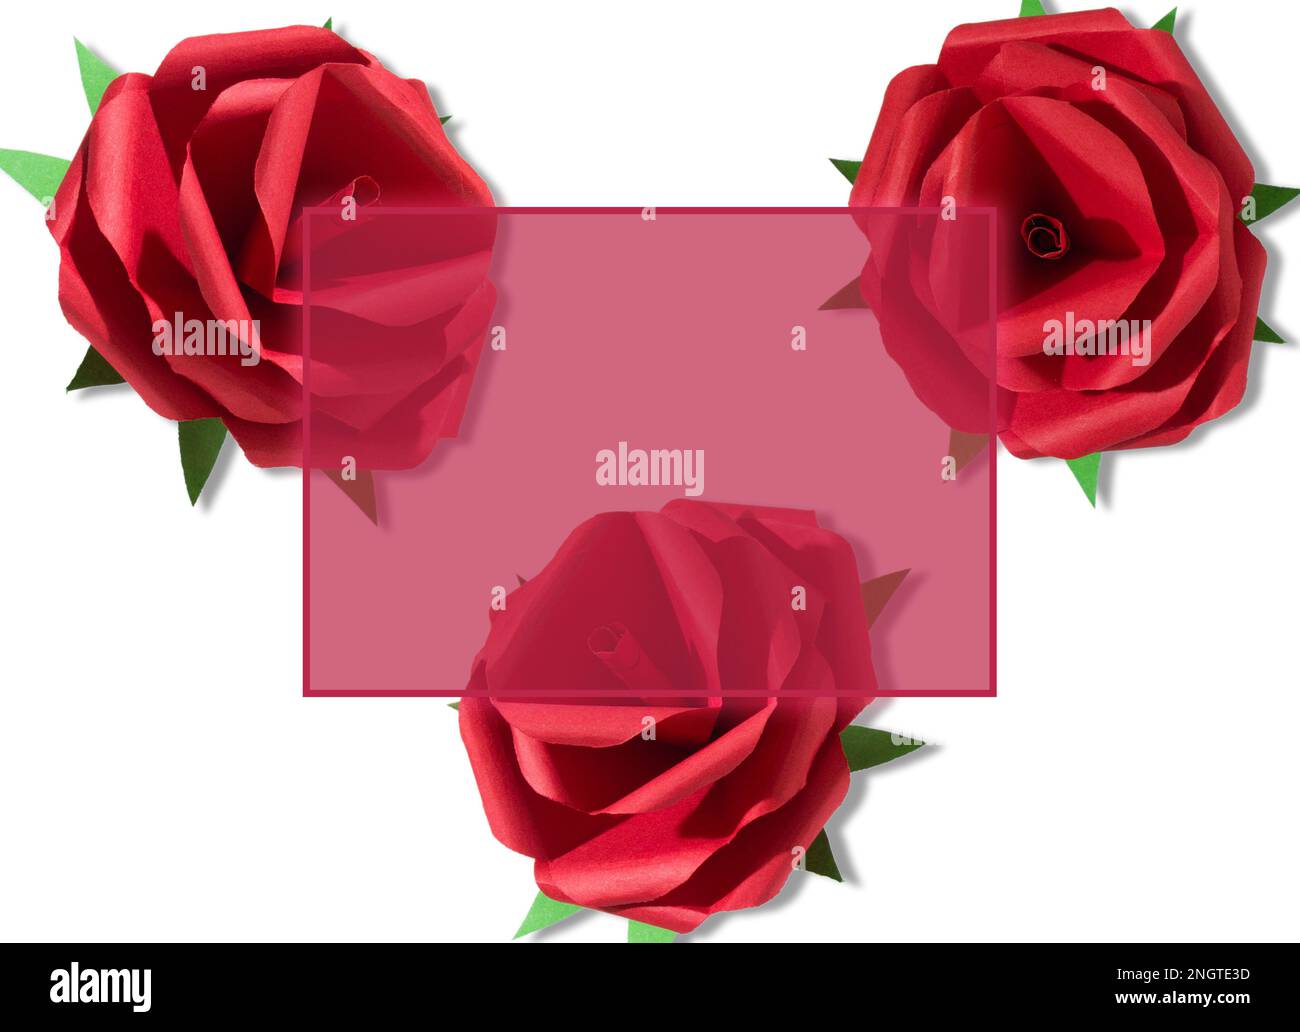 viva magenta cornice trasparente su sfondo bianco con rose rosse artigianali, design creativo per le vacanze Foto Stock